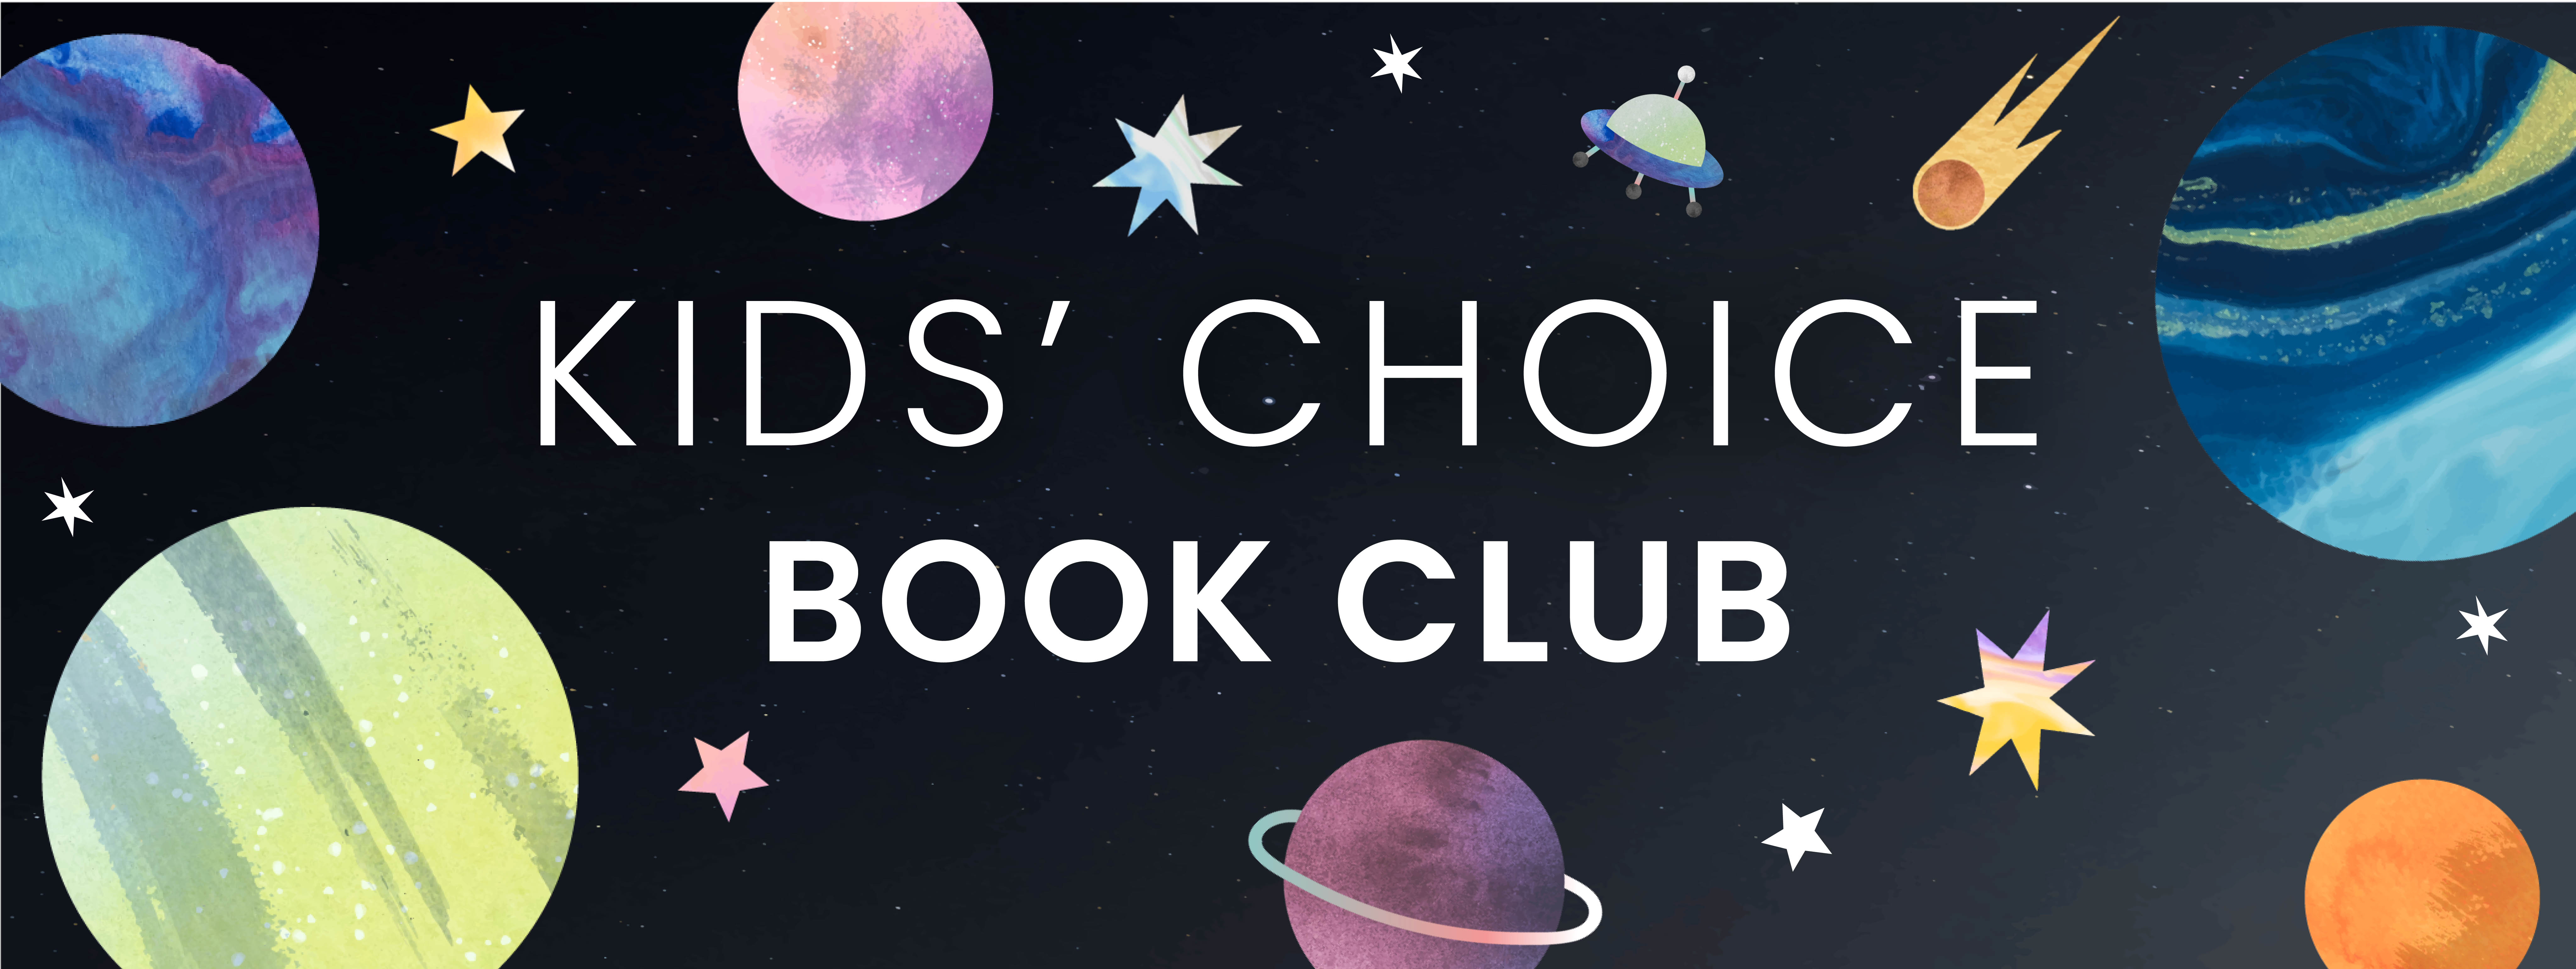 Kids' Choice Book Club